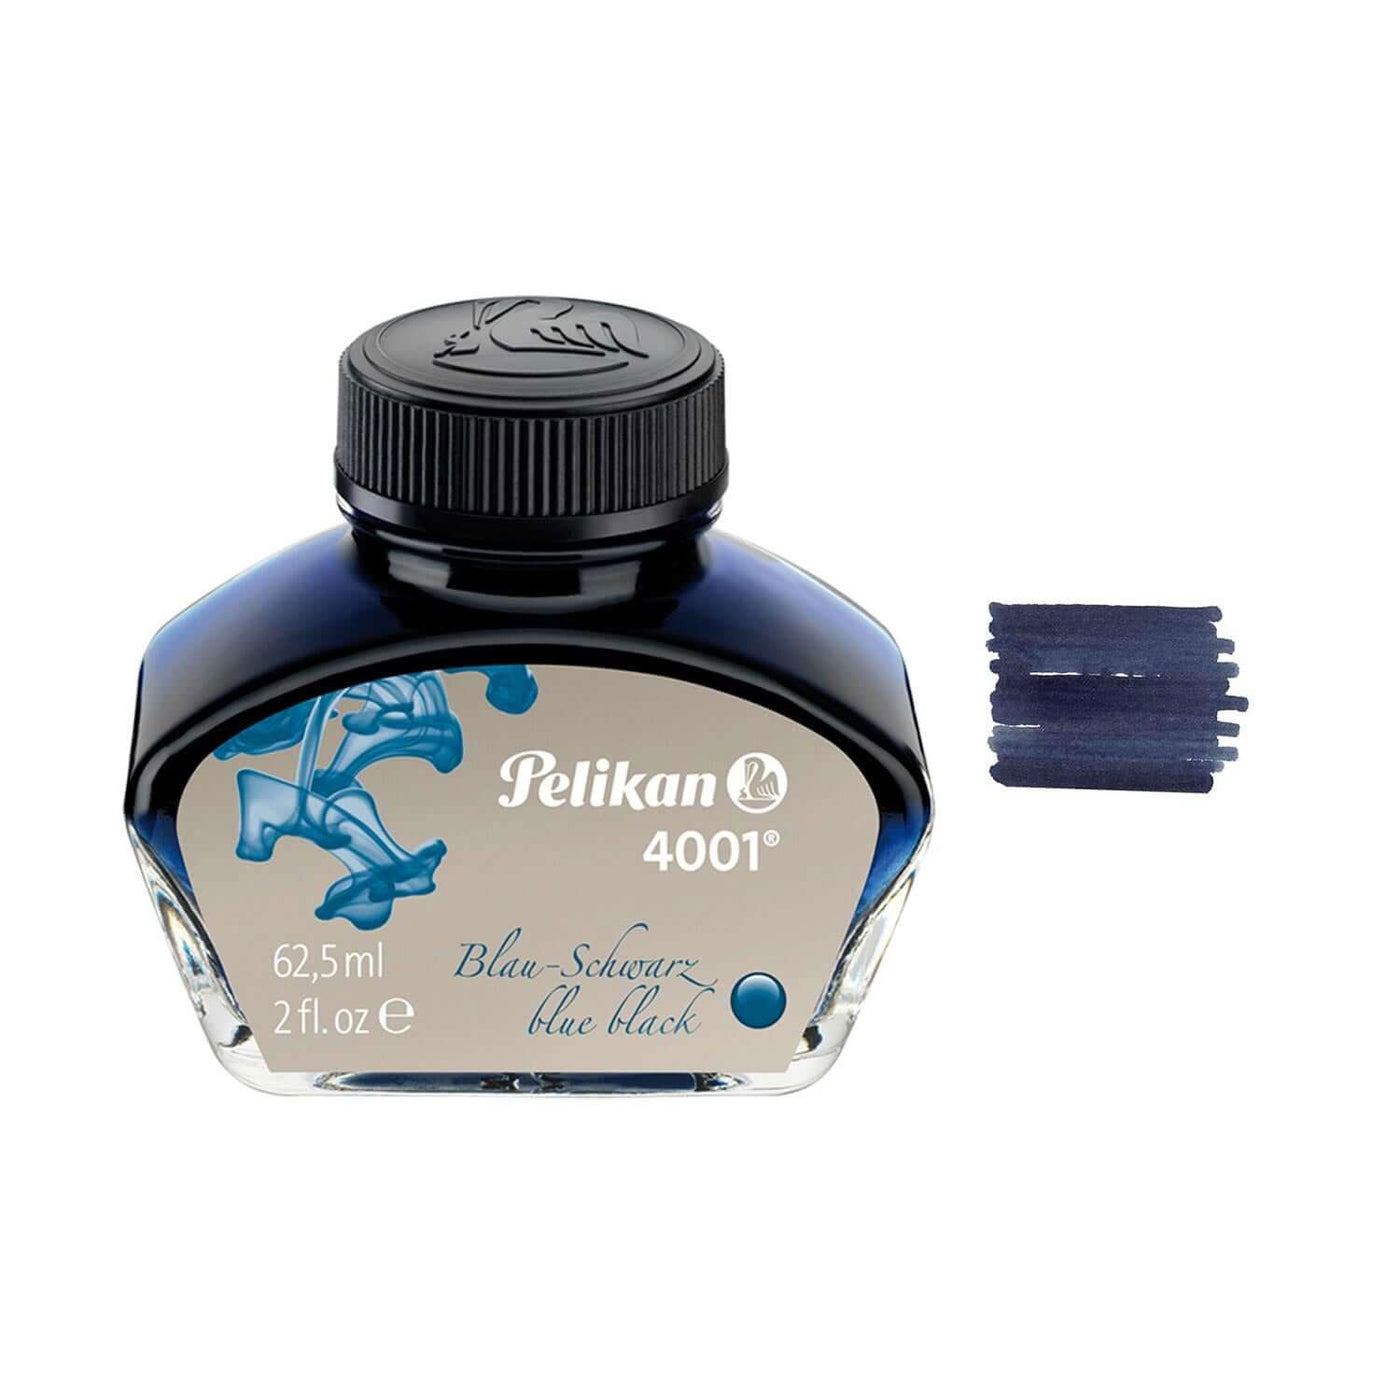 Pelikan 4001 Ink Blue Black 62.5ml 2